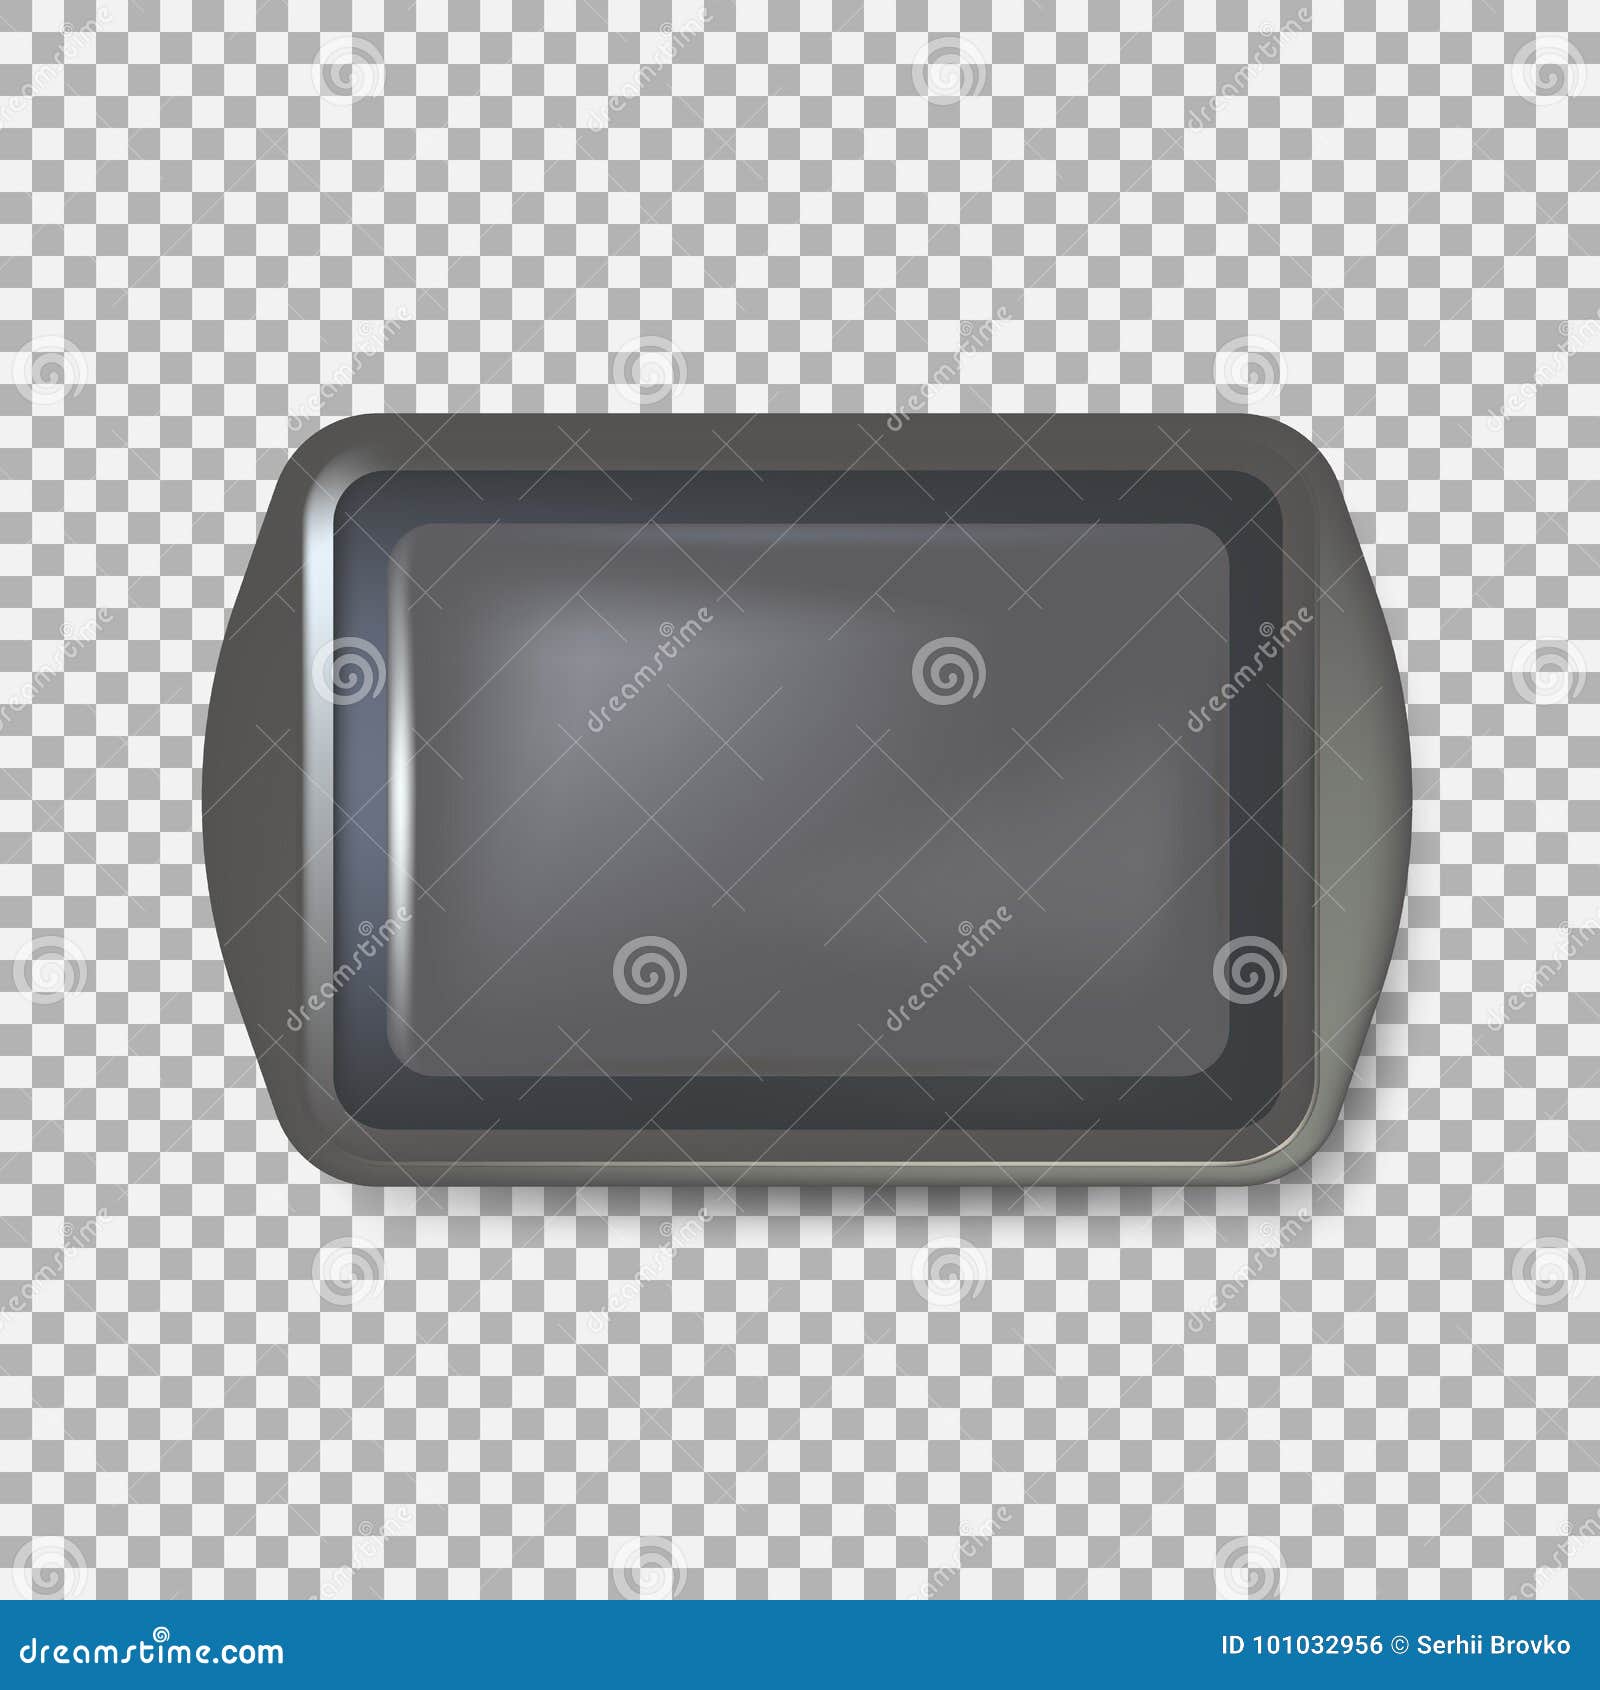 Vista superior da placa preta quadrada Bandeja plástica vazia Salva da bandeja do metal com punhos Isolado no fundo Ilustração do vetor Eps 10